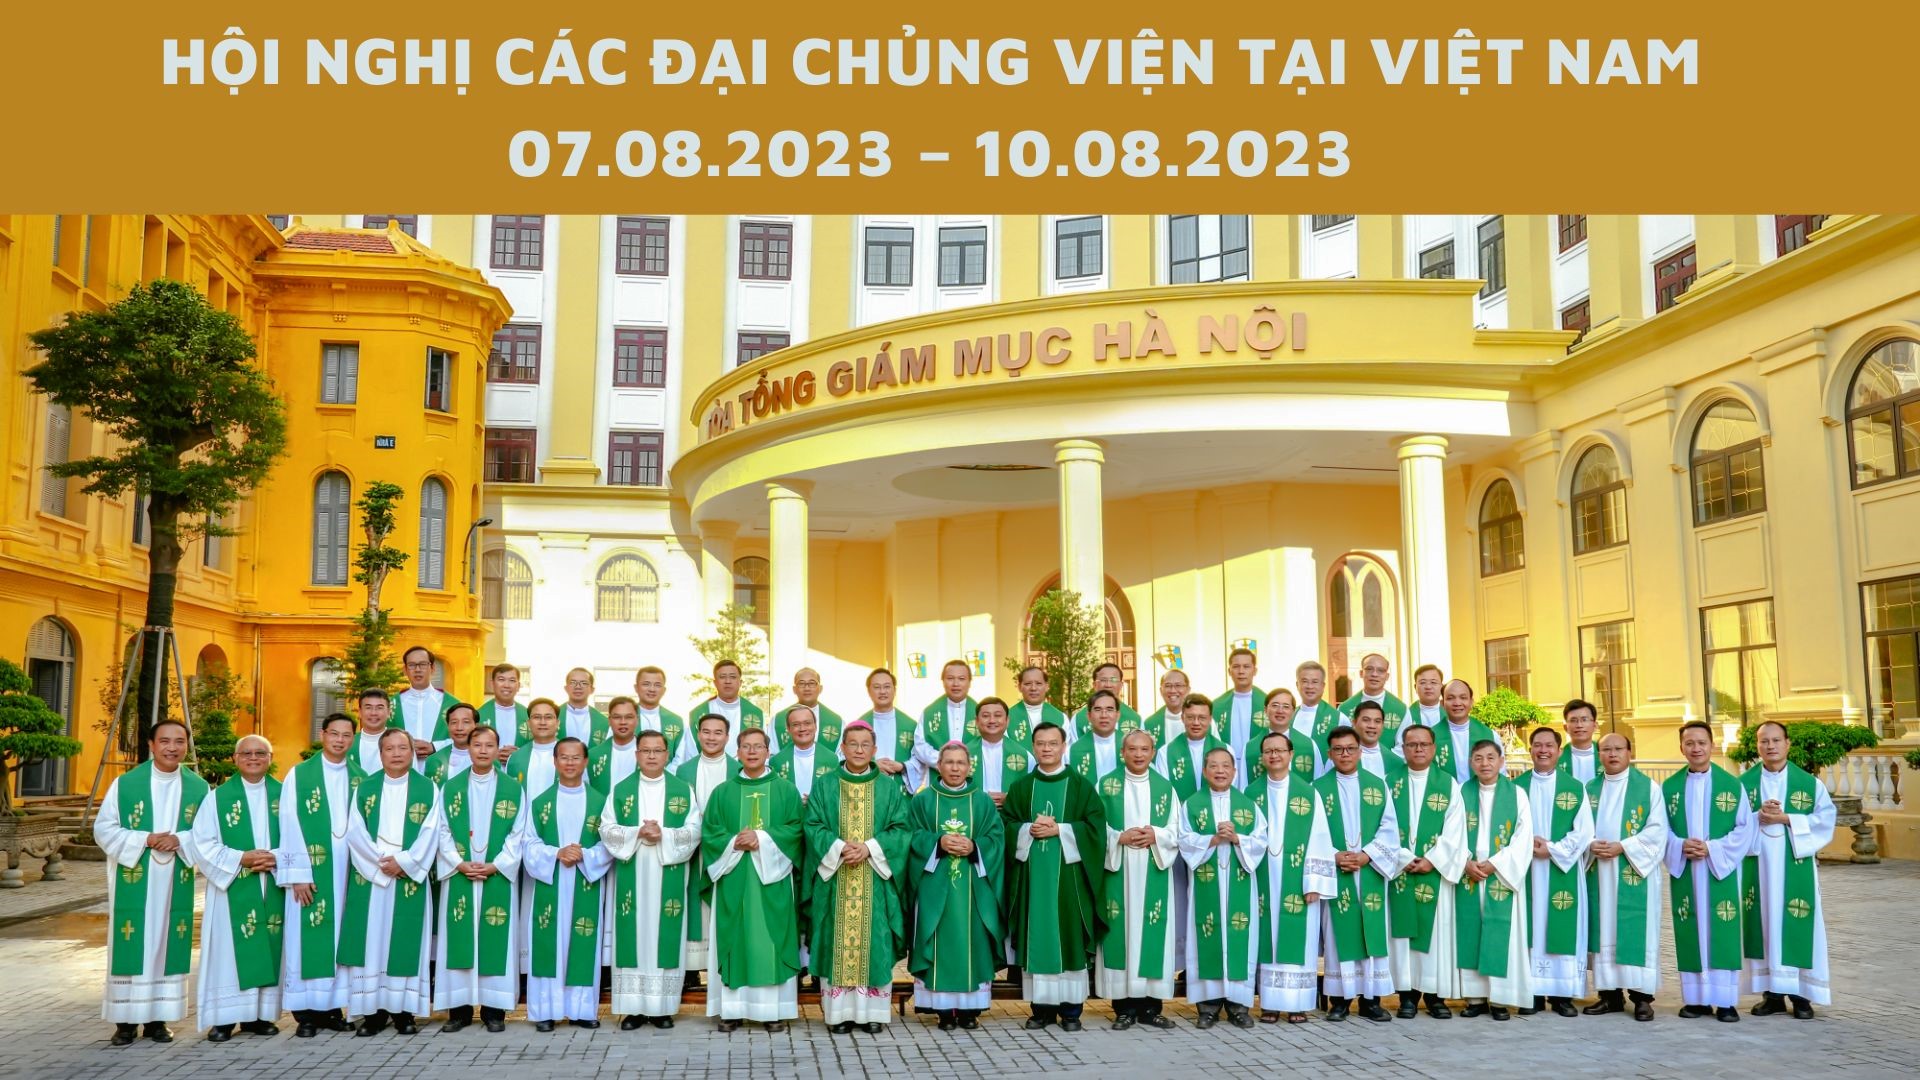 Hội nghị các đại chủng viện tại Việt Nam năm 2023: Đồng hành tòa trong và tòa ngoài